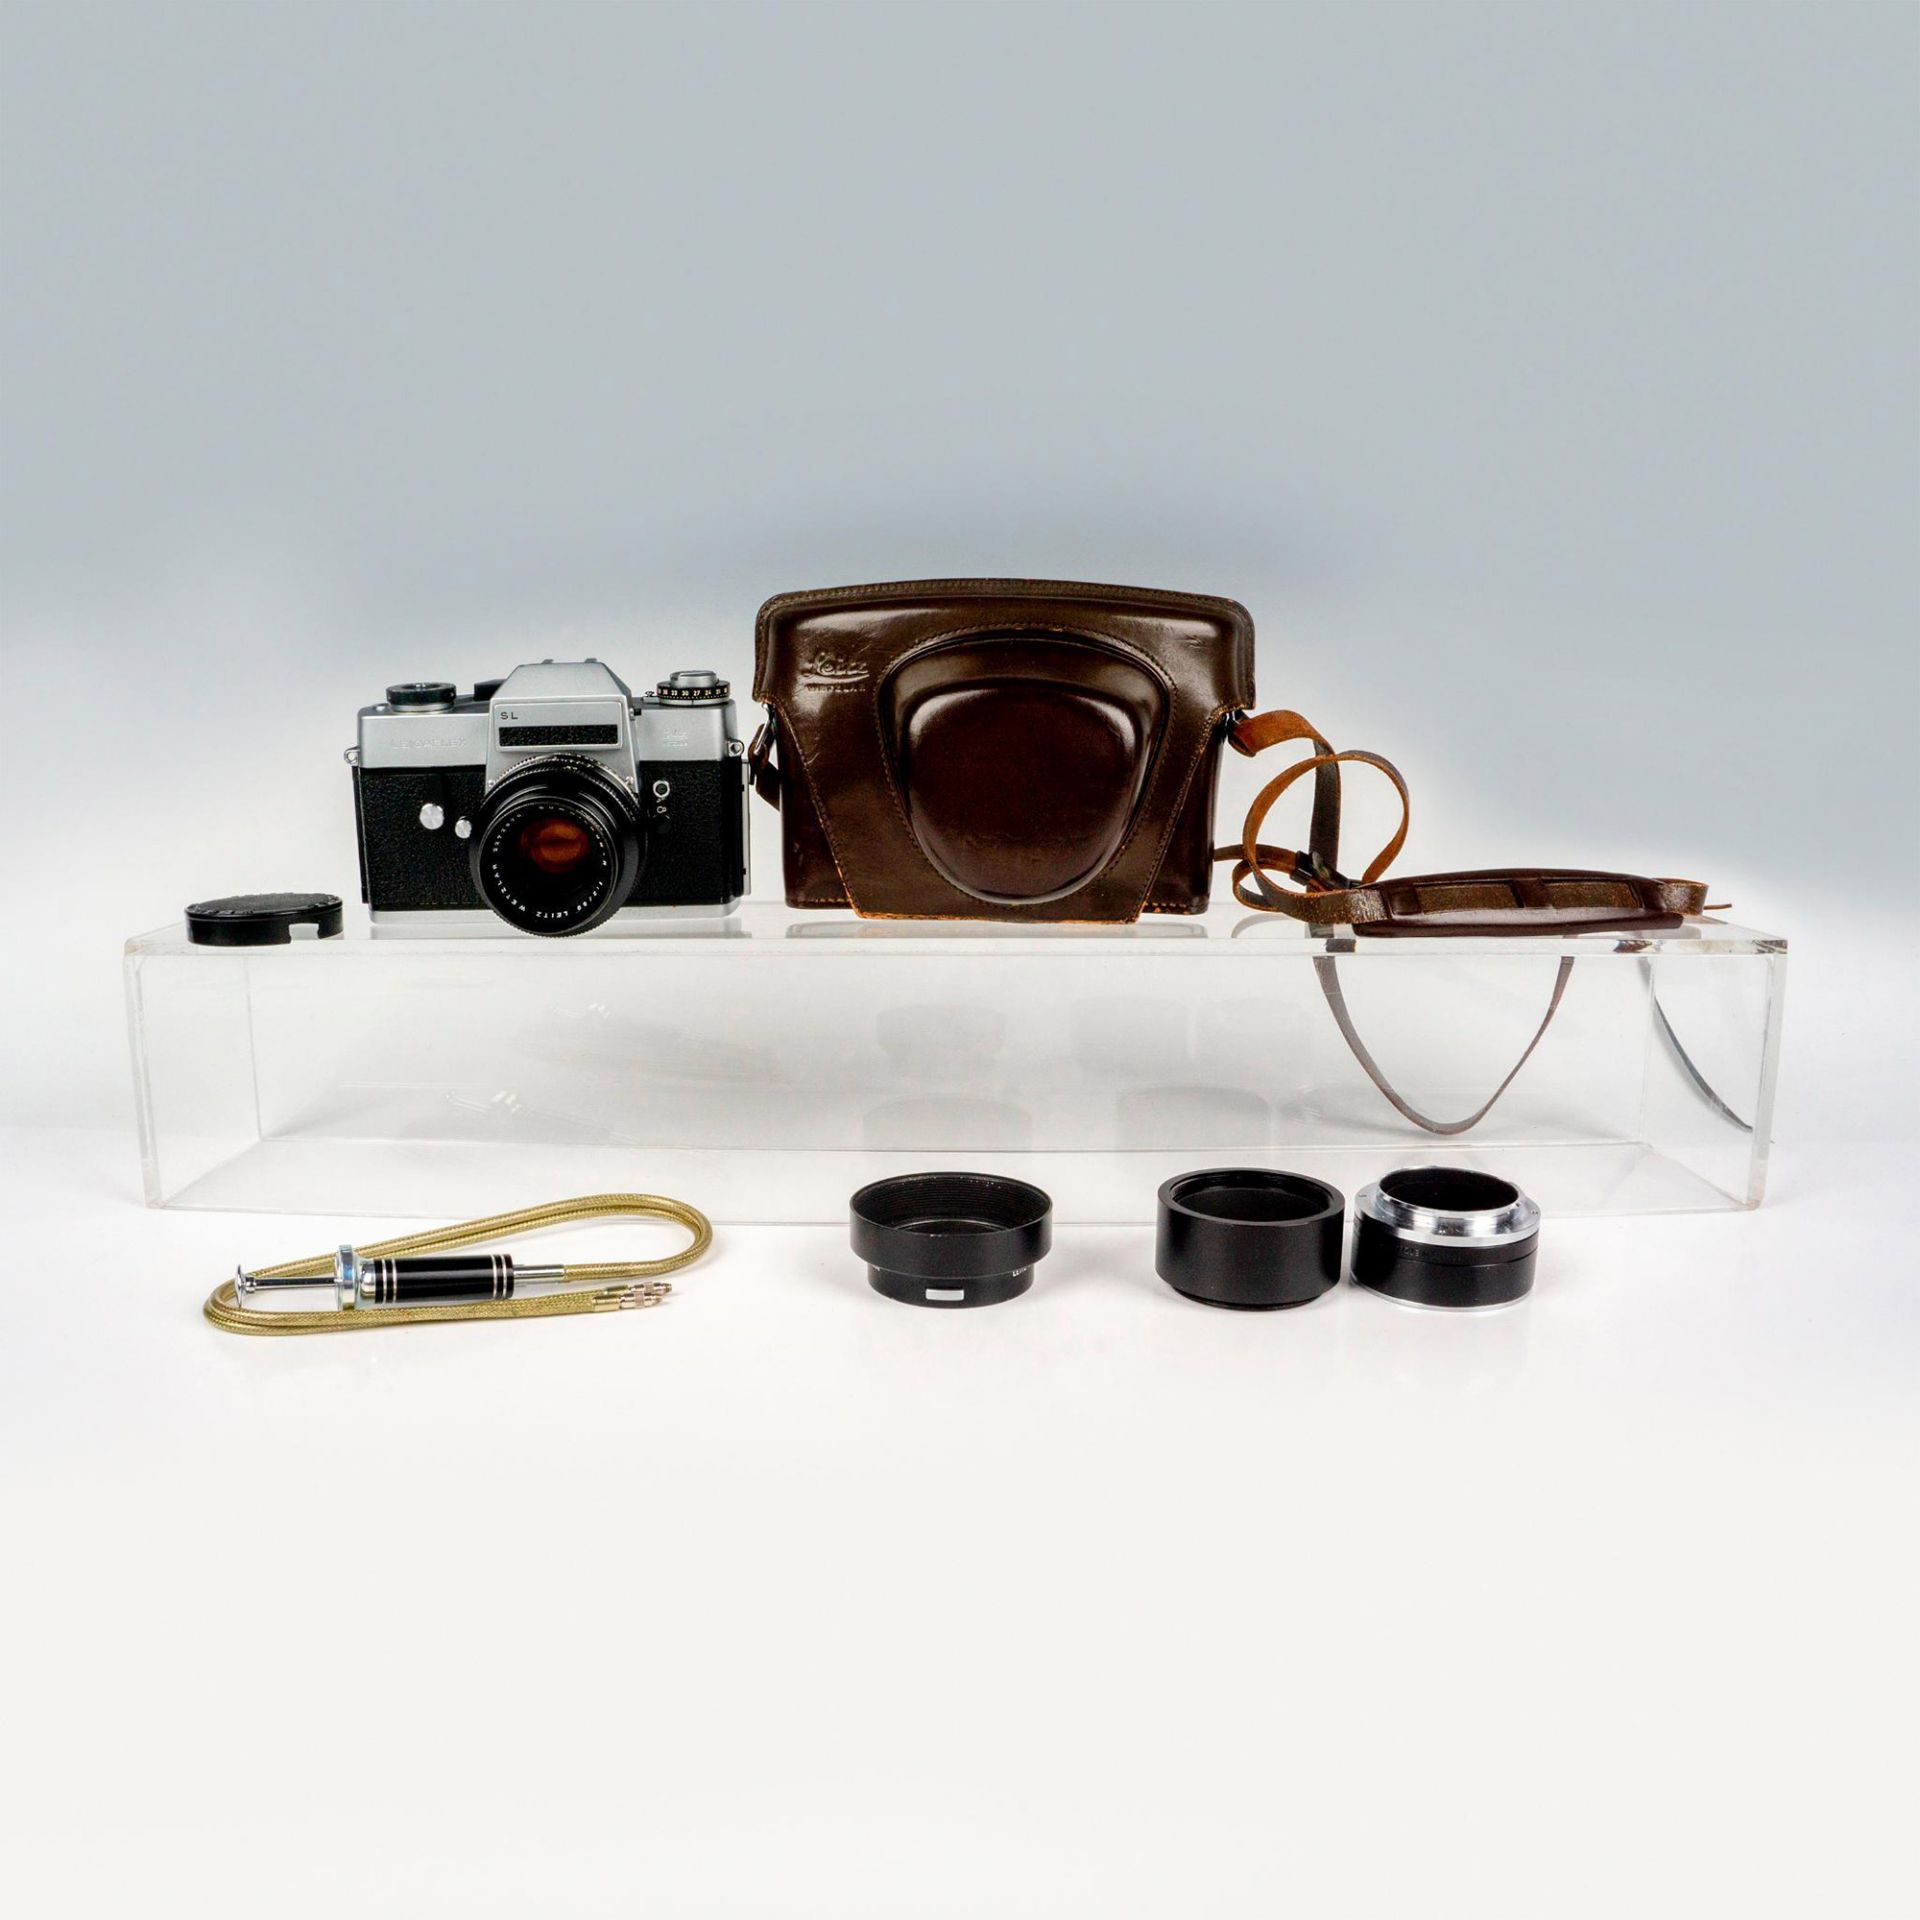 Leica Leicaflex SL Camera, Summicron-R 1;2 Lens, Accessories